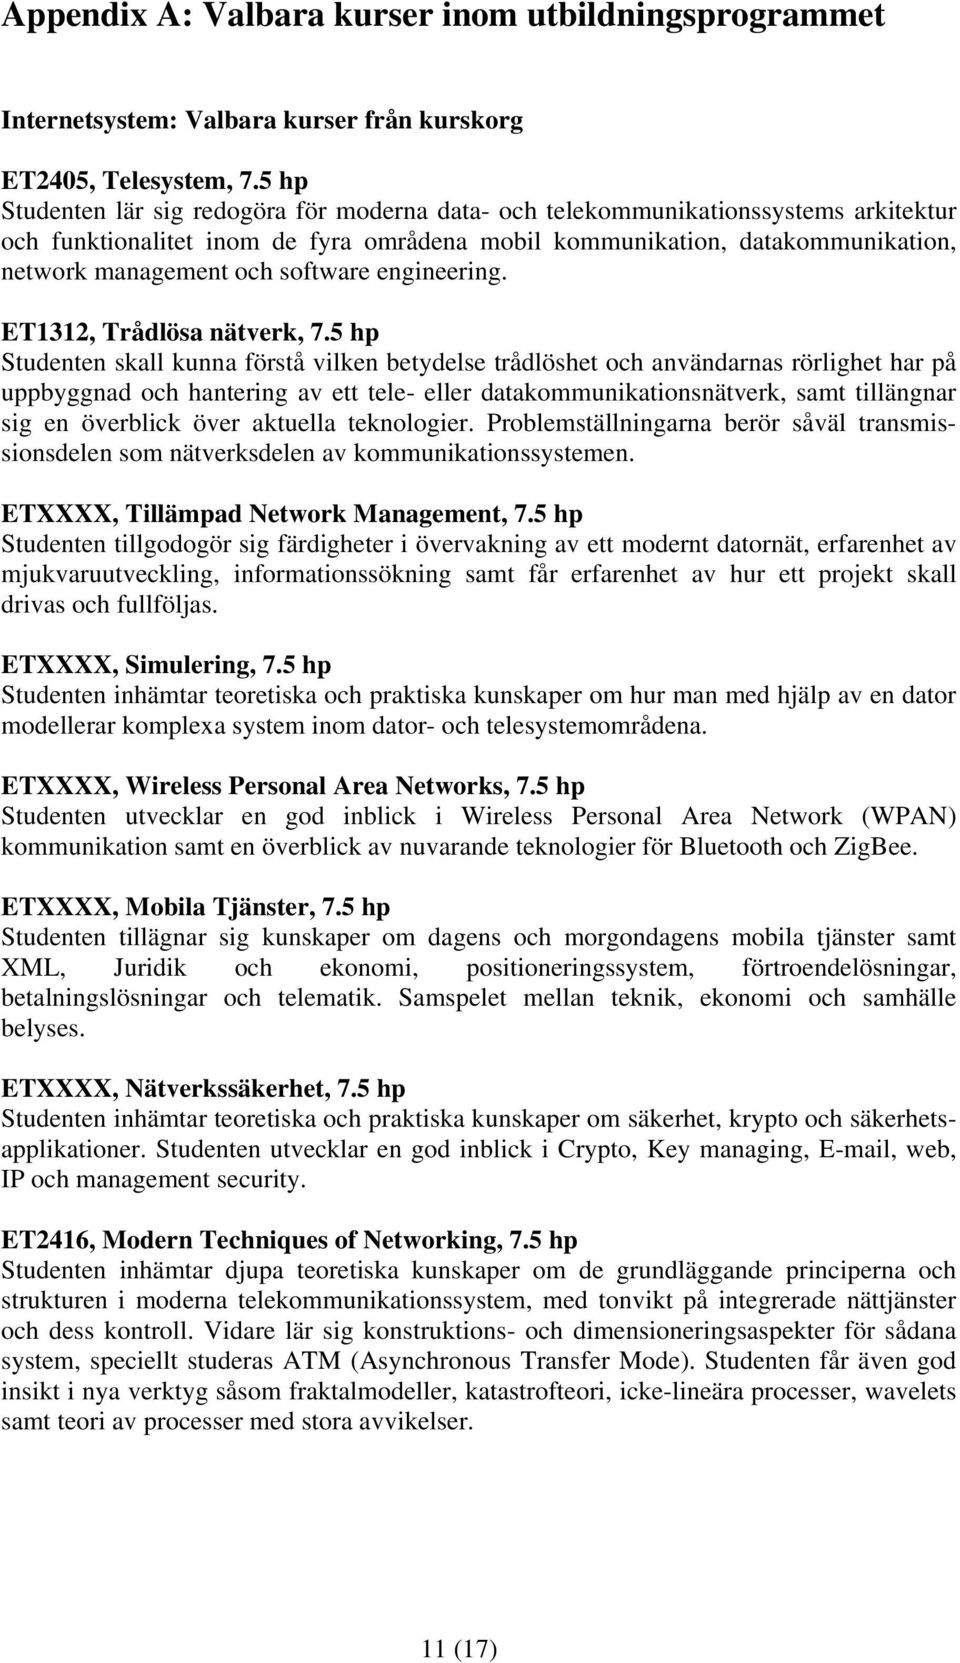 software engineering. ET1312, Trådlösa nätverk, 7.